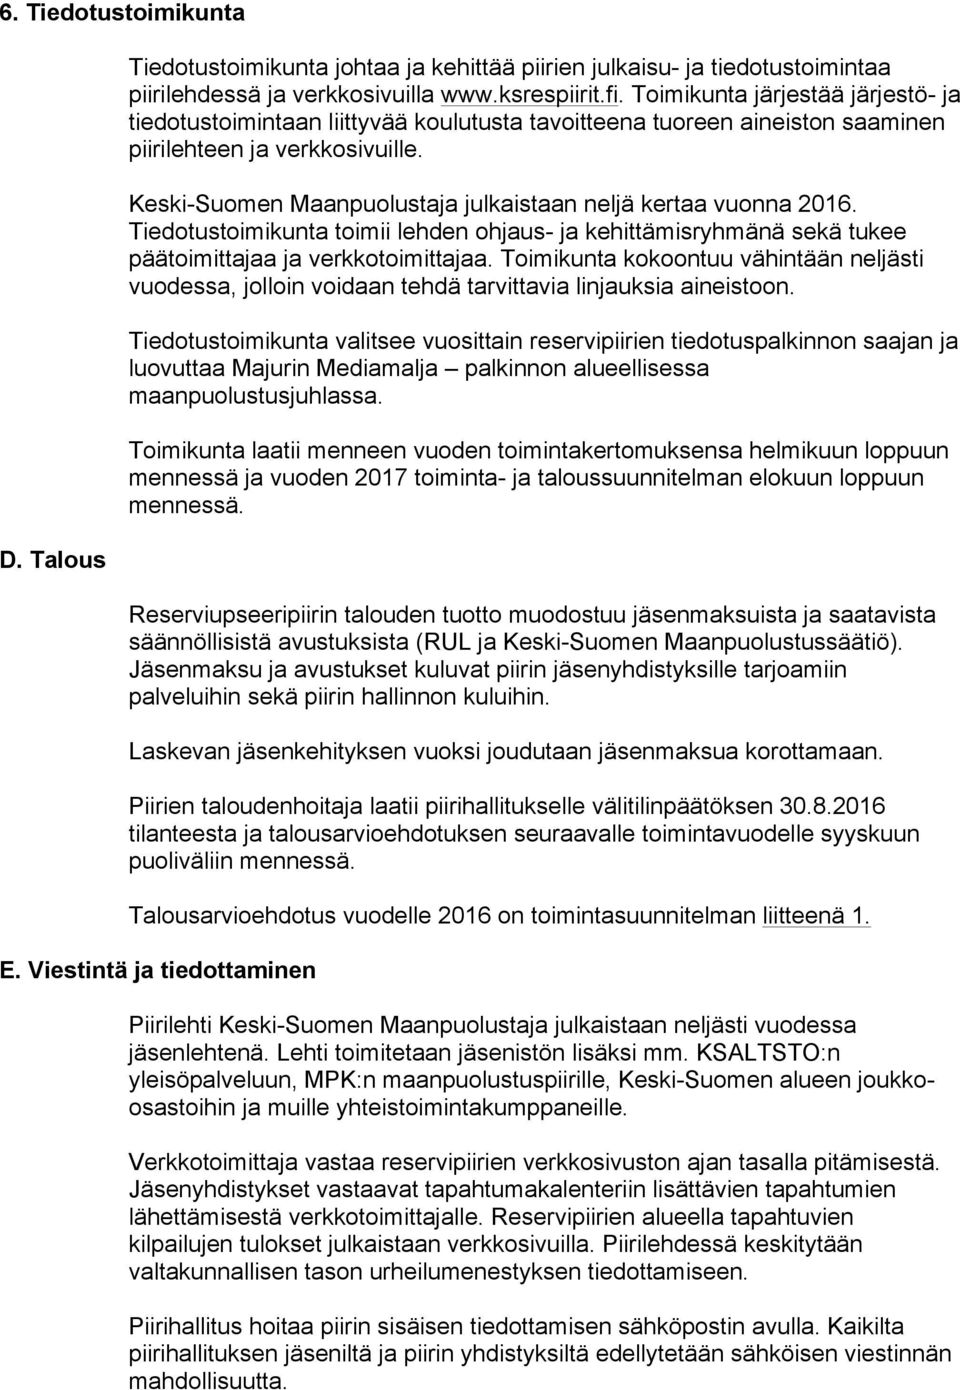 Keski-Suomen Maanpuolustaja julkaistaan neljä kertaa vuonna 2016. Tiedotustoimikunta toimii lehden ohjaus- ja kehittämisryhmänä sekä tukee päätoimittajaa ja verkkotoimittajaa.